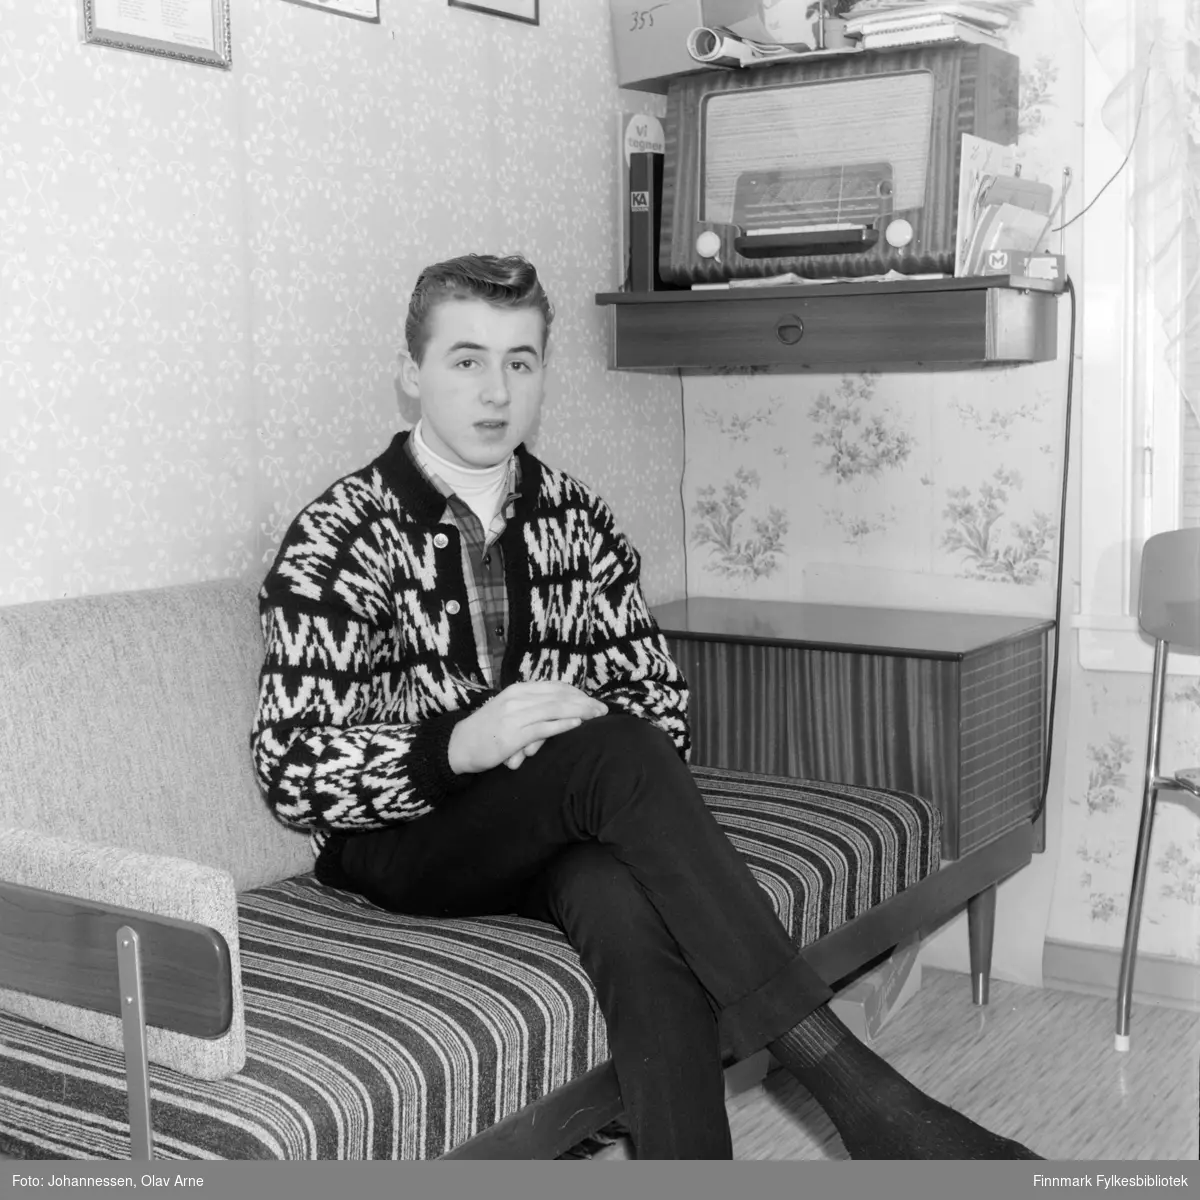 Foto av Frank Einar Pedersen (født 1946) 

Til høyre for han kan man se en radio på en hylle 

Til vesntre får radioen kan man se to bøker. "Vi tegner" og "KA skolen" står skrevet på bøkene 

Foto trolig tatt på tidlig 1960-tallet